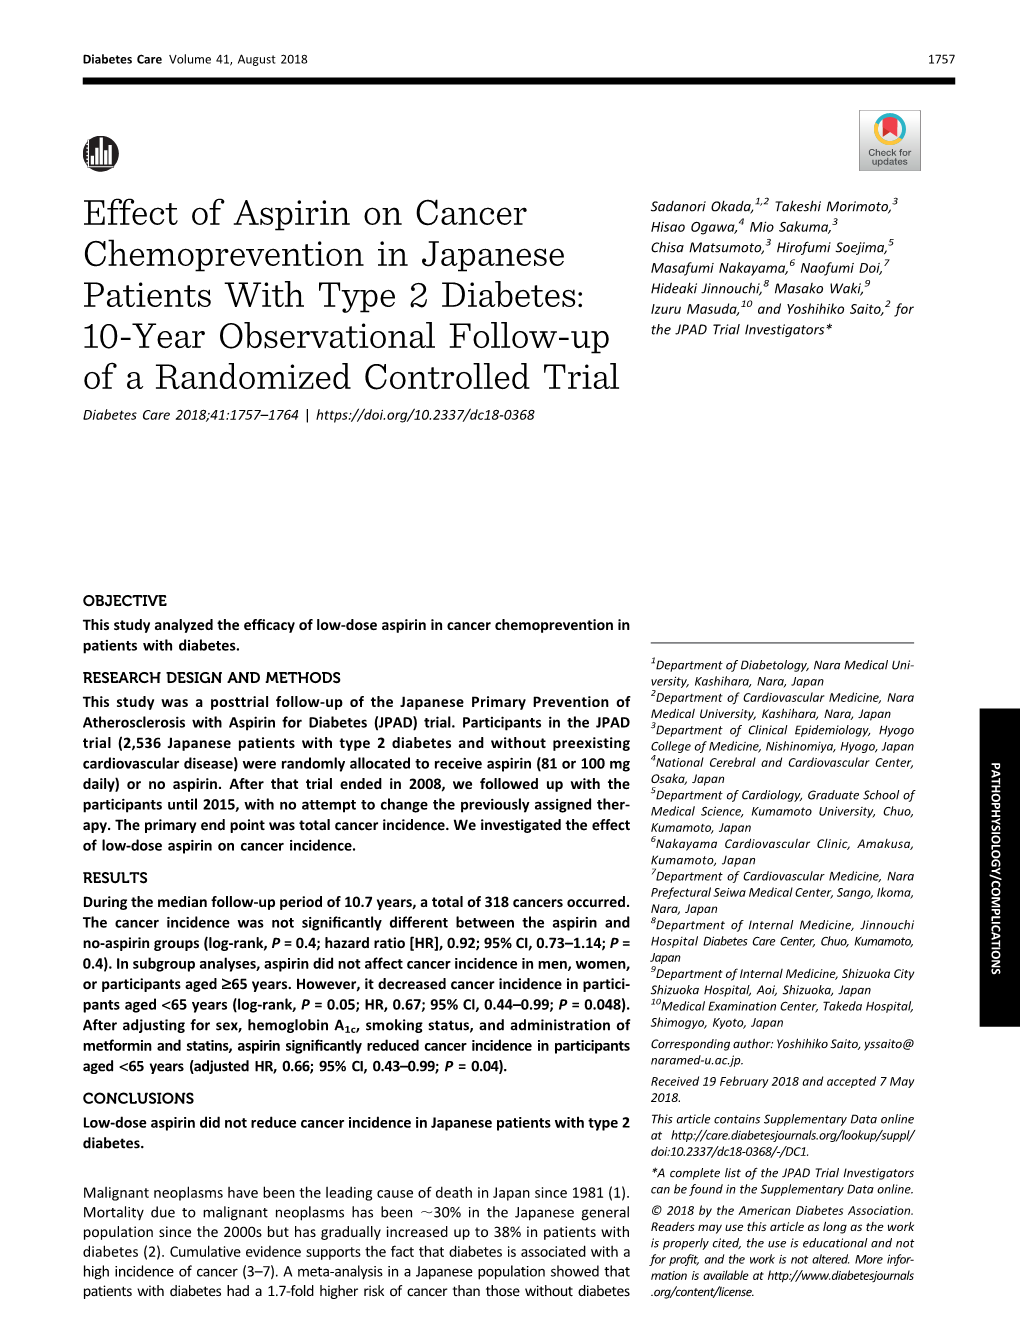 Effect of Aspirin on Cancer Chemoprevention